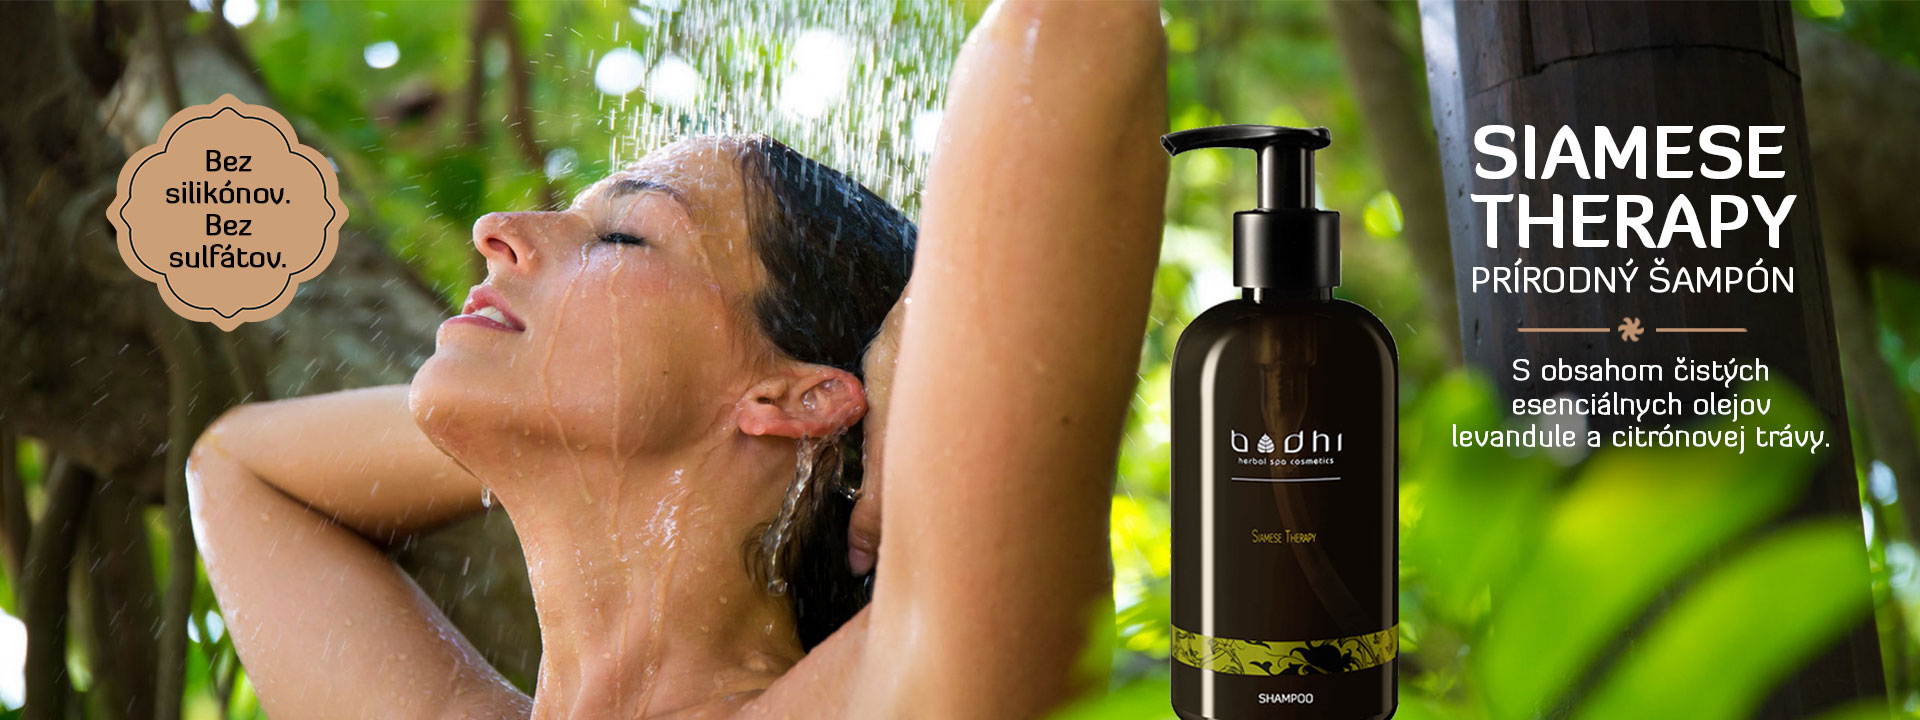 Prírodný šampón siamese therapy